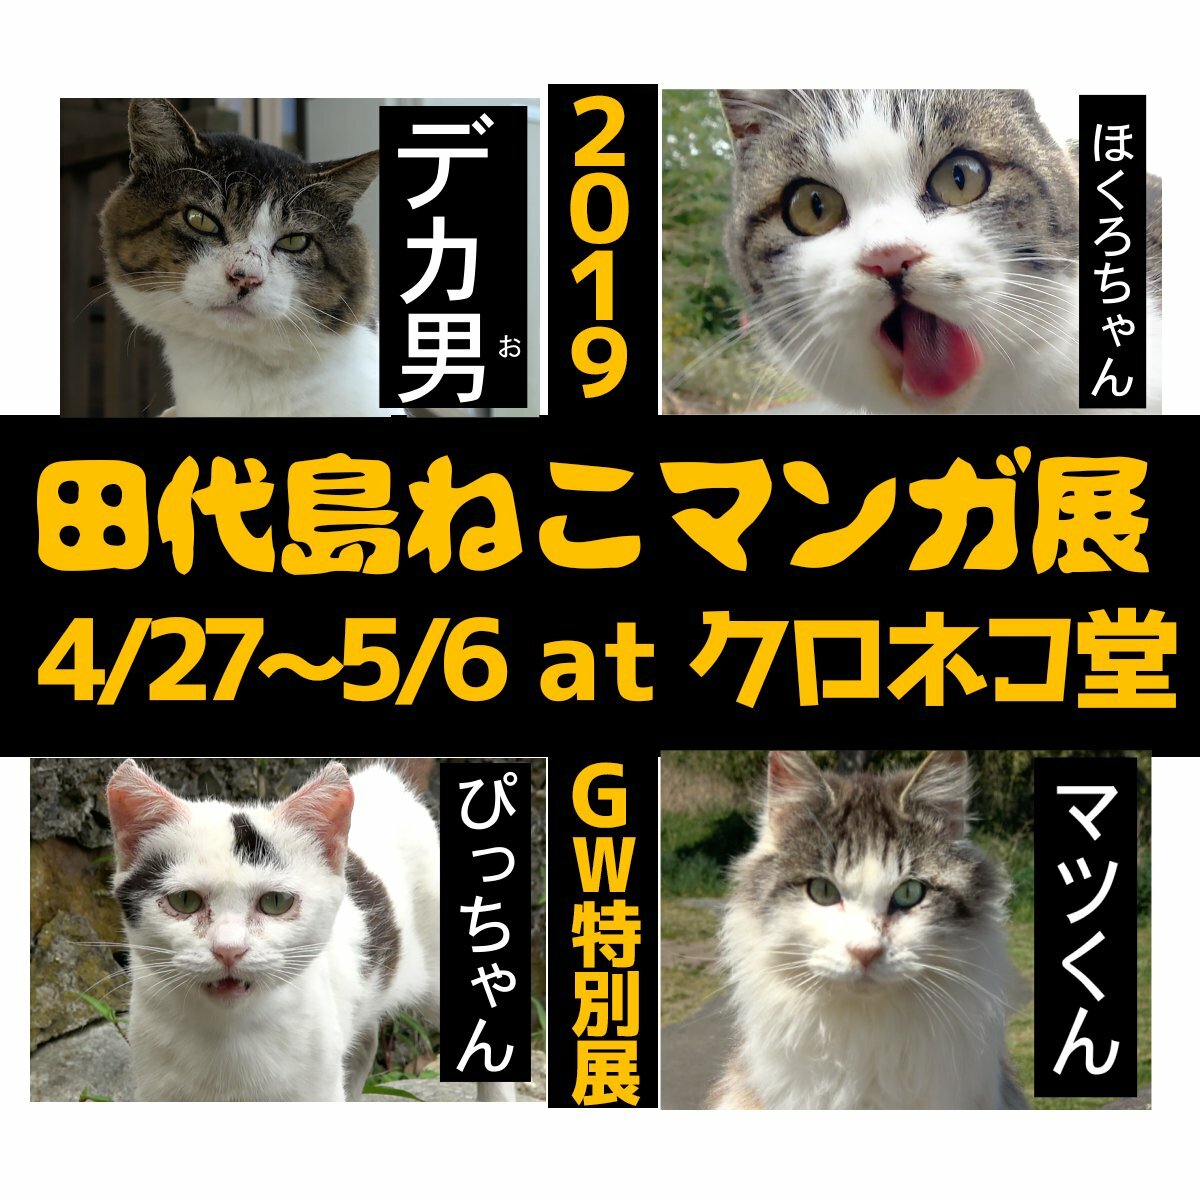 Topic 4 27 猫の島 田代島で ねこマンガ展 が開催 せんだいマチプラ